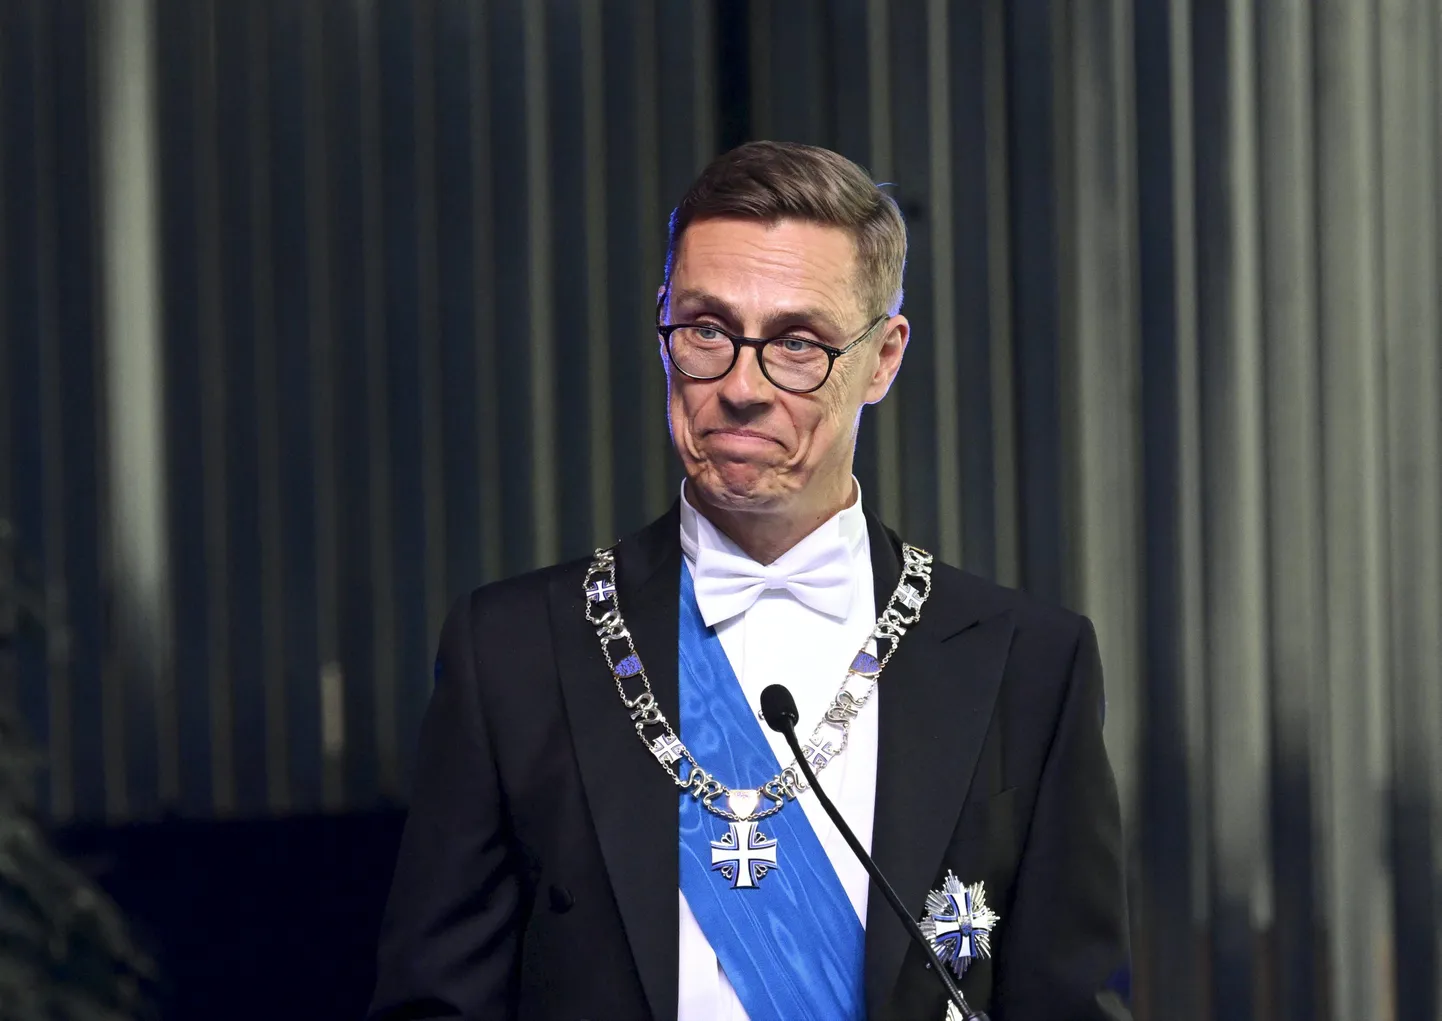 Soome president Alexander Stubb pidas 27. mail 2024 Tallinnas kruiisisadamas Eesti presidendi Alar Karise korraldatud õhtusöögil kõne, milles viitas ka soomlaste vodkaturismile Eestis.